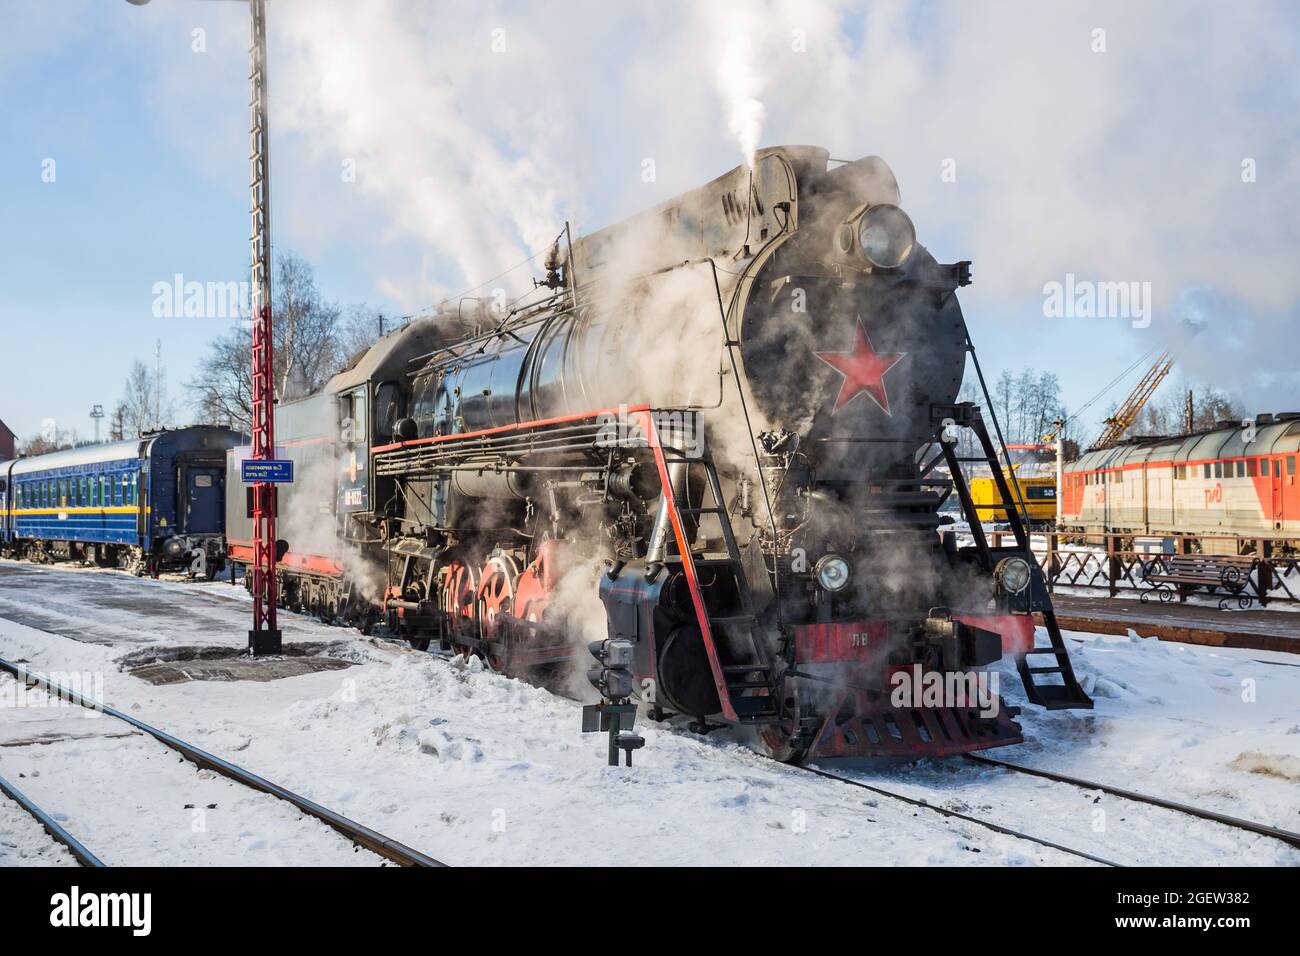 SORTAVALA, RUSSIE - 10 MARS 2021 : une vieille locomotive à vapeur soviétique s'accroche à un train de voyageurs à la gare de Sortavala Banque D'Images